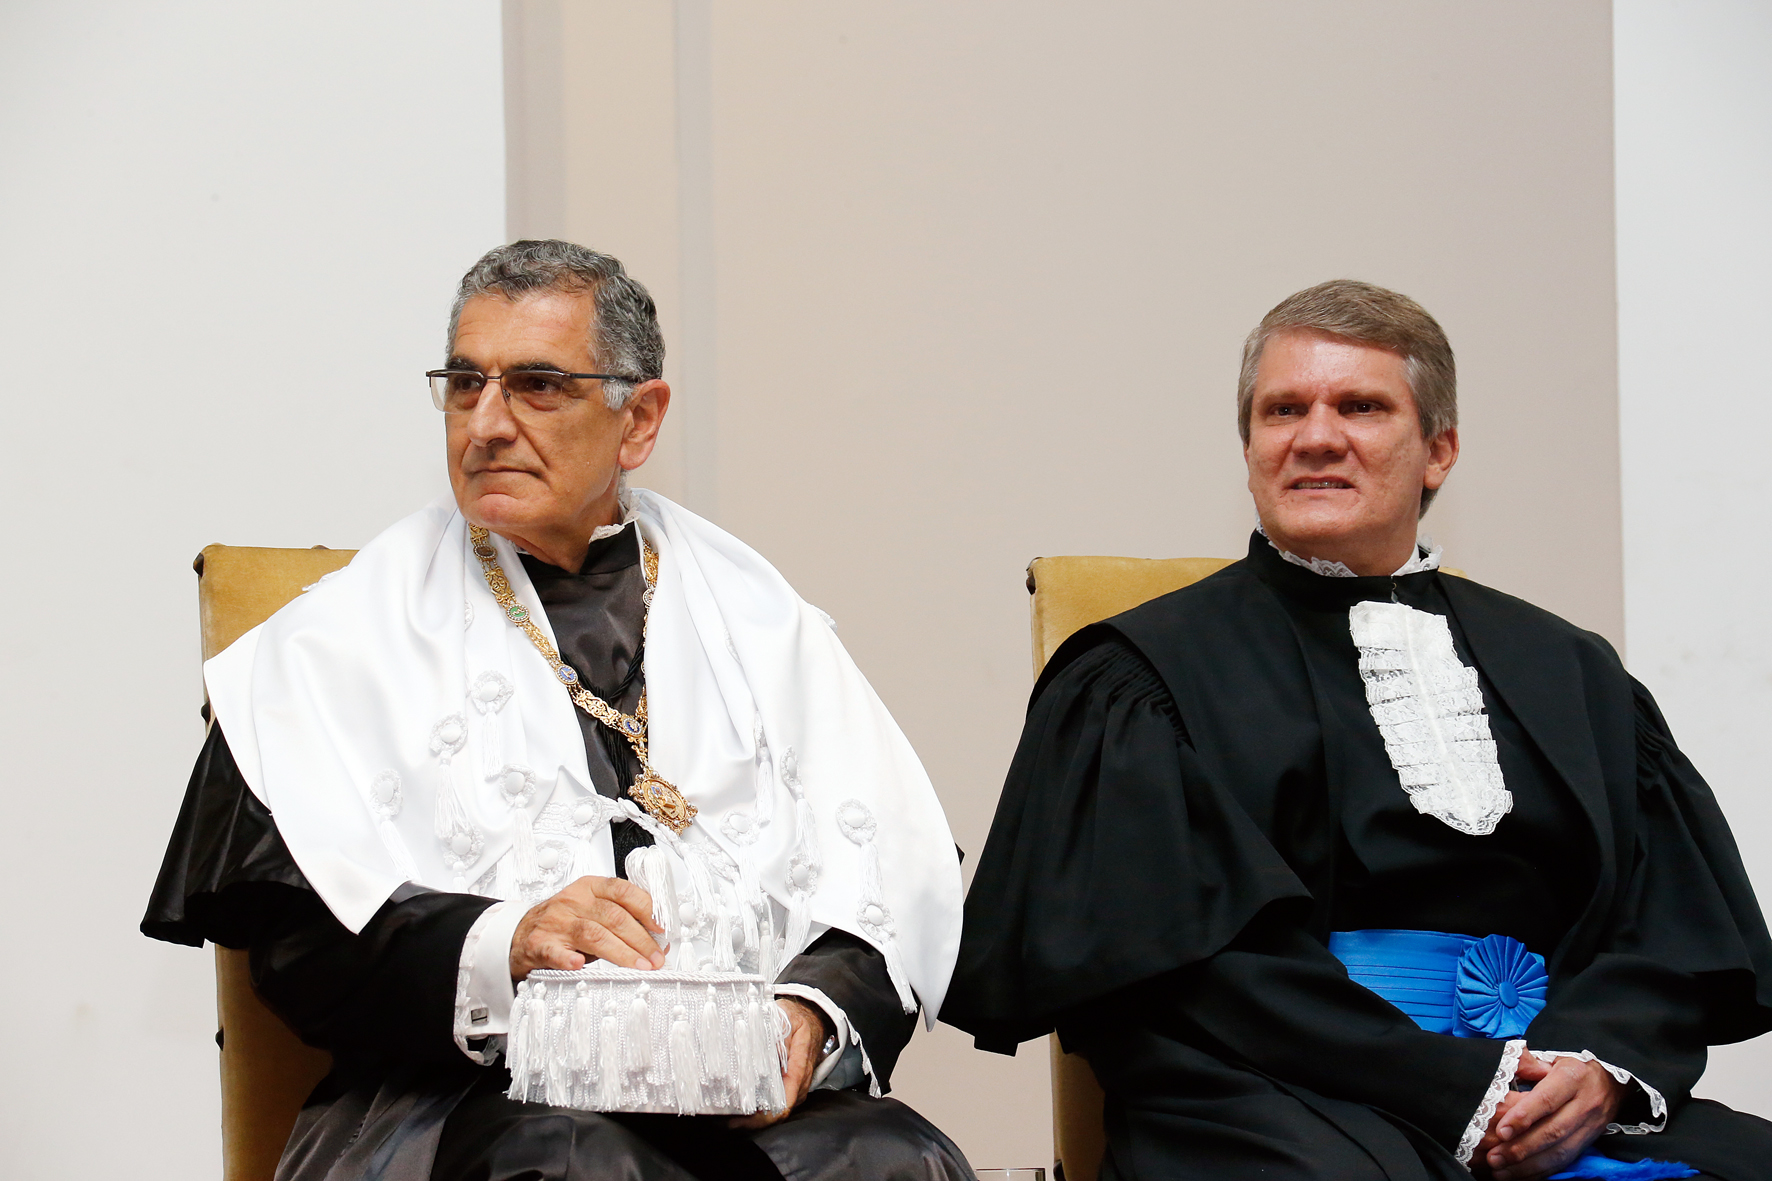 Os novos reitor, Vahan Agopyan, e vice-reitor, Antonio Carlos Bastos, durante a cerimônia de posse